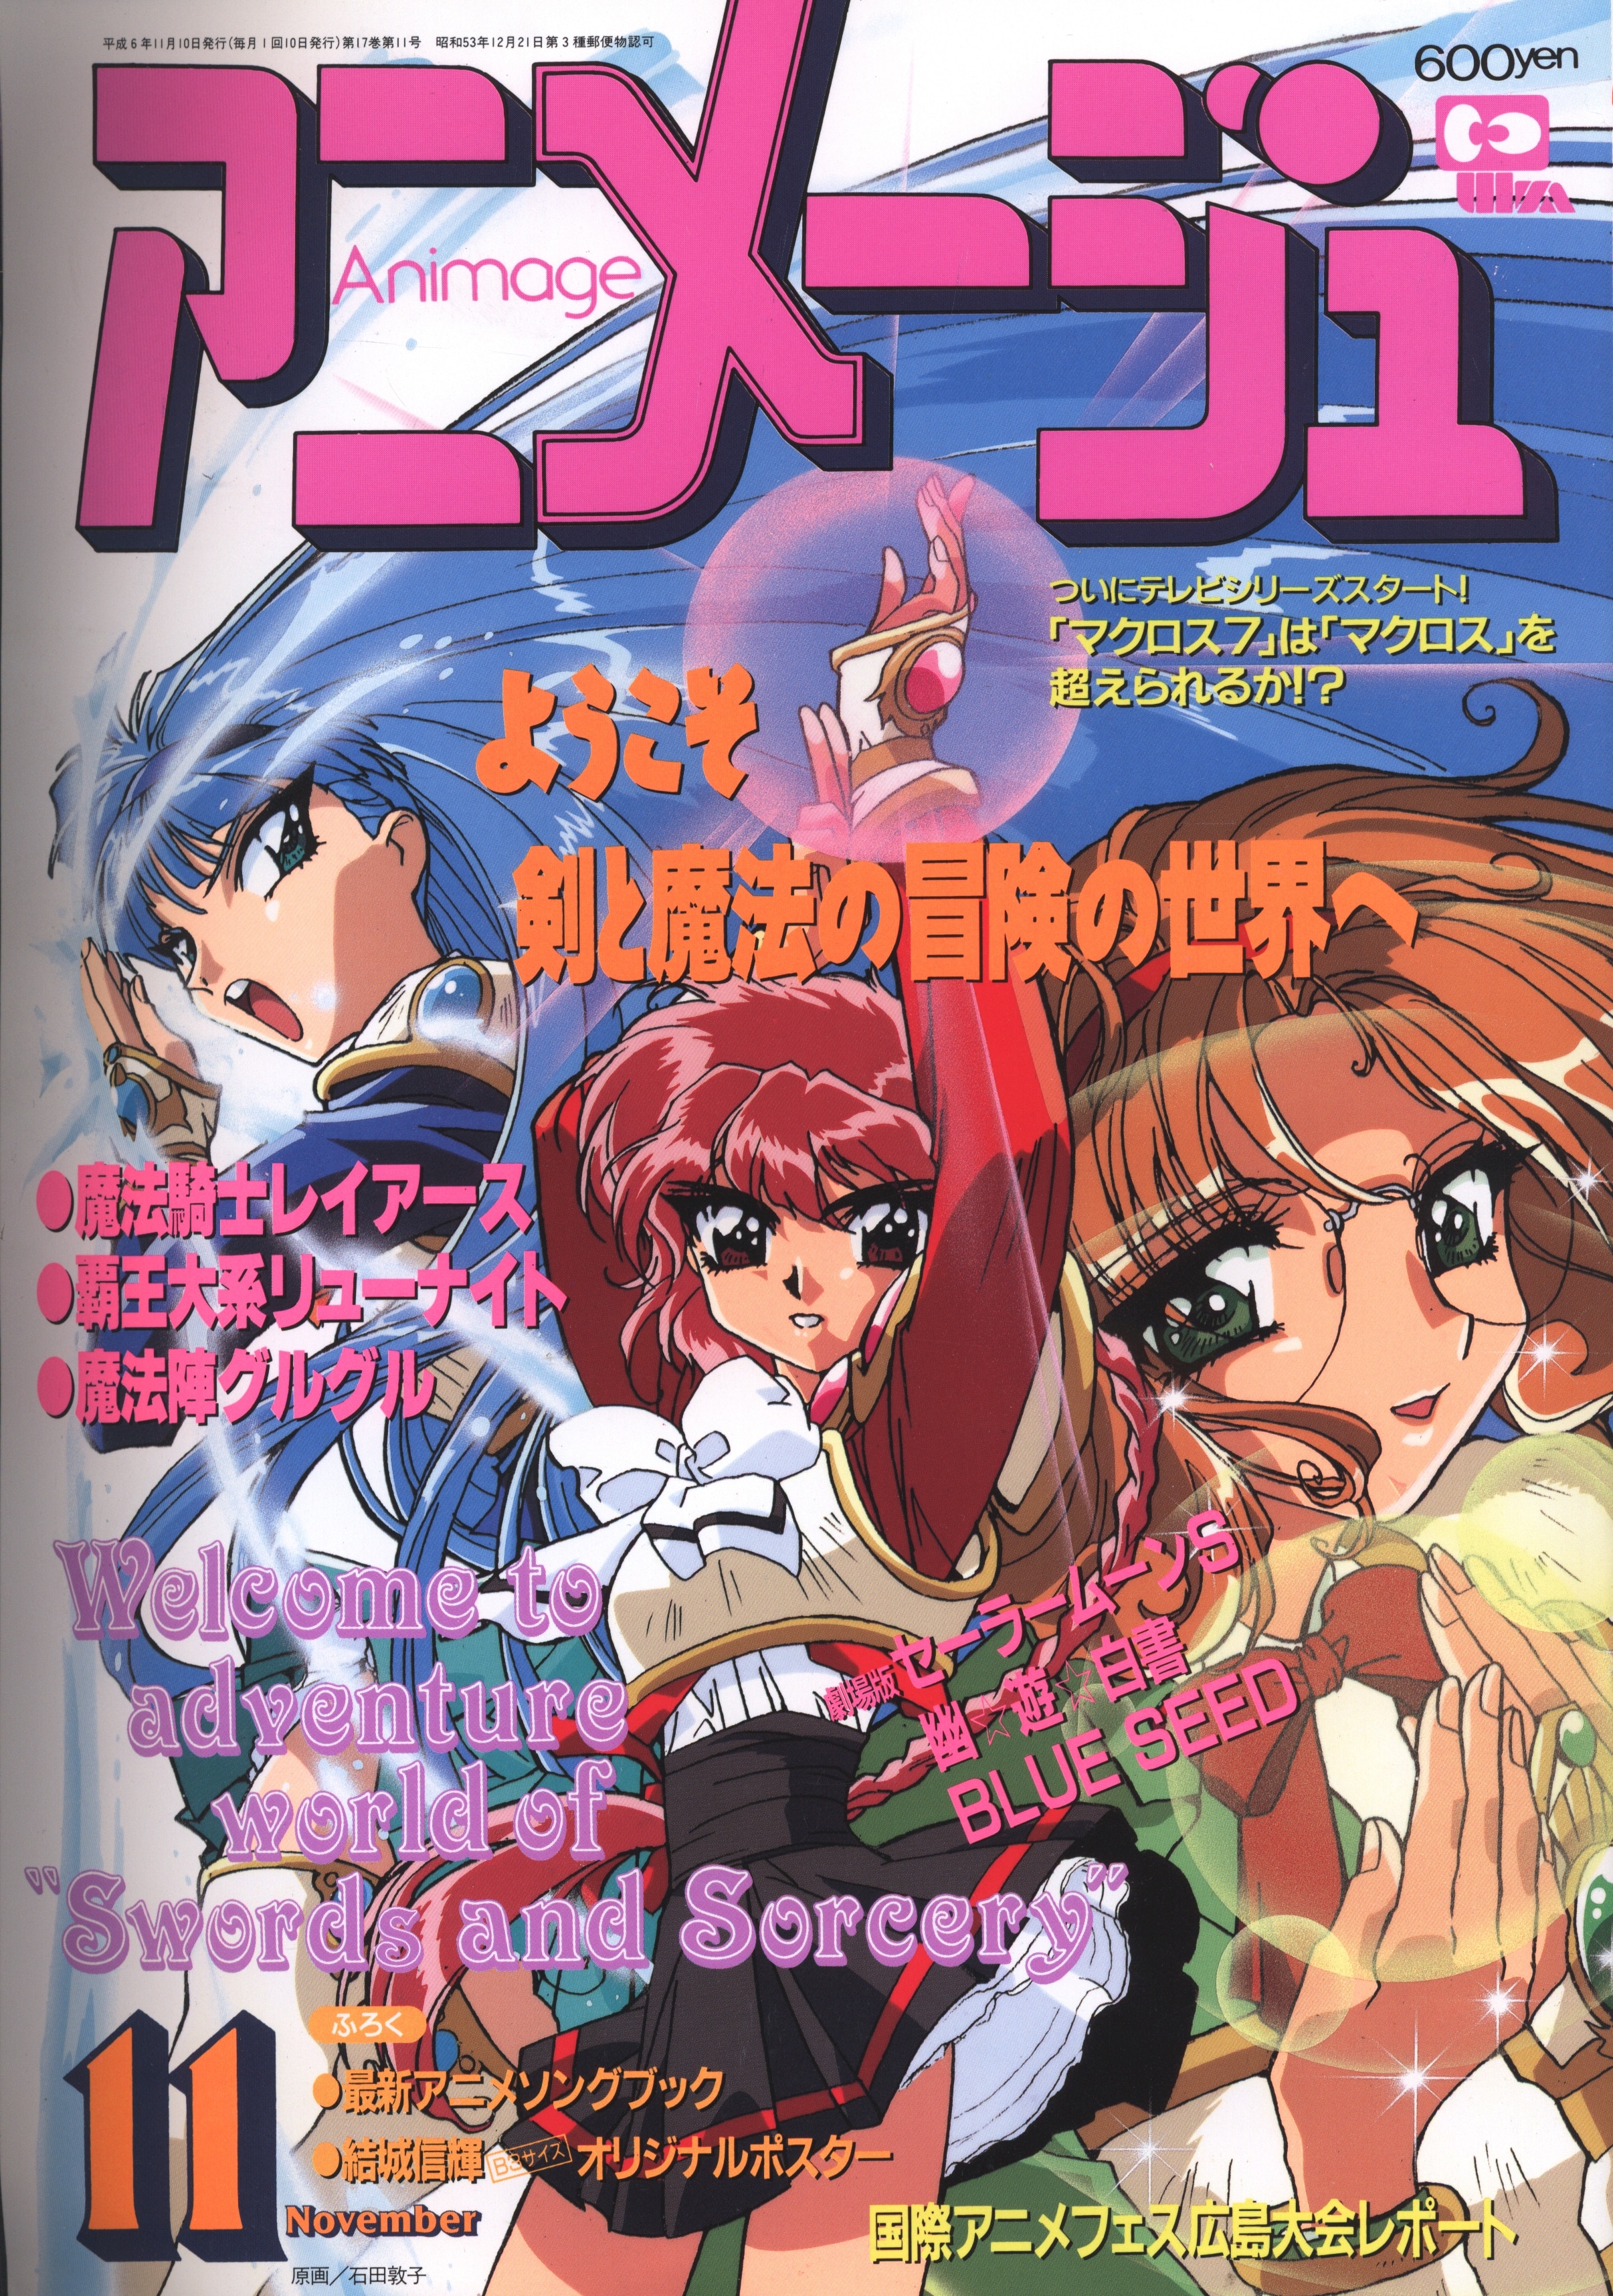 徳間書店 1994年 平成6年 のアニメ雑誌 付録つき アニメージュ1994年 平成6年 11月号 197 まんだらけ Mandarake